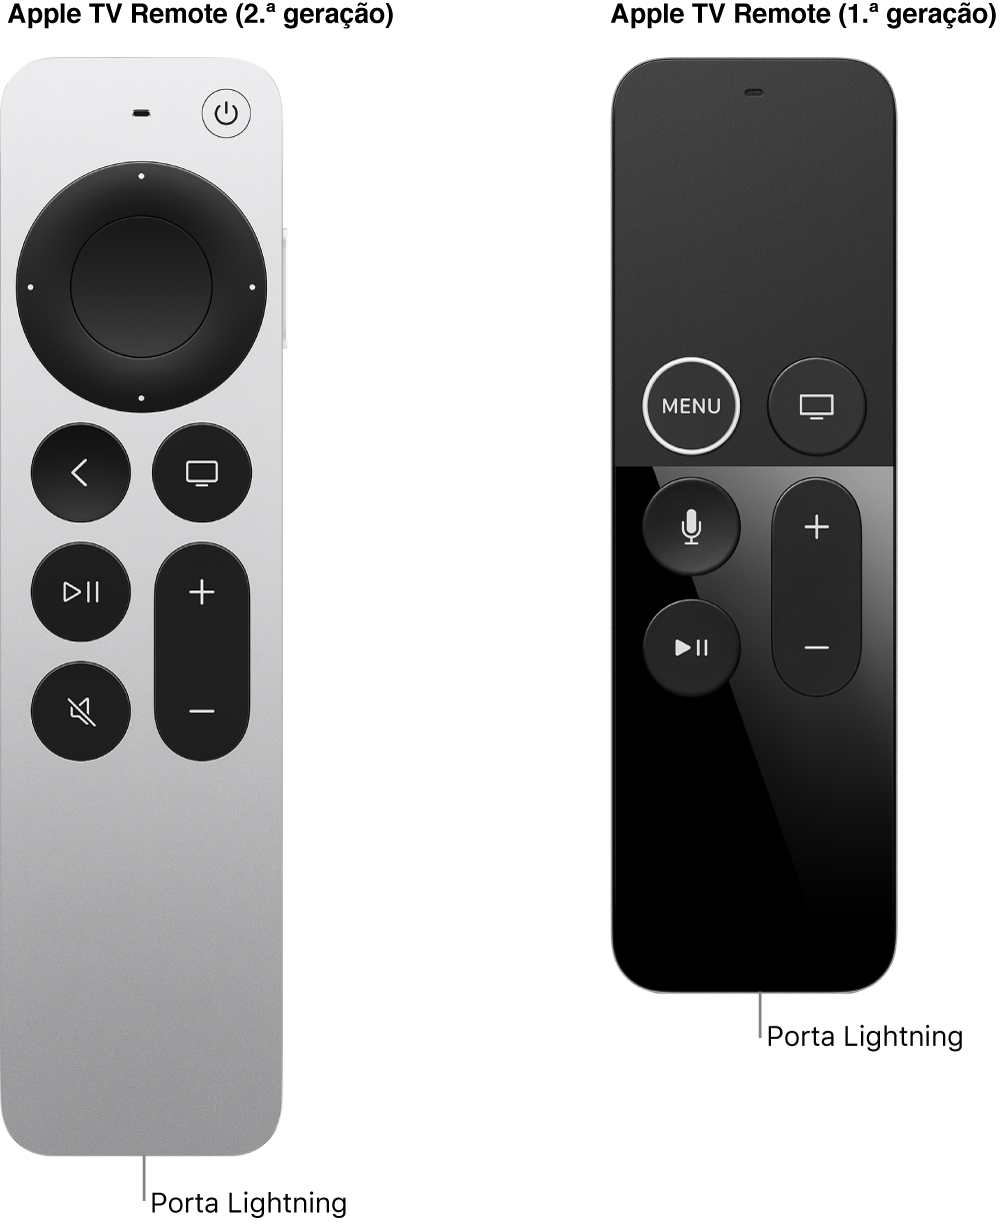 Imagem do Apple TV Remote (2.ª geração) e do Apple TV Remote (1.ª geração) a mostrar a porta Lightning